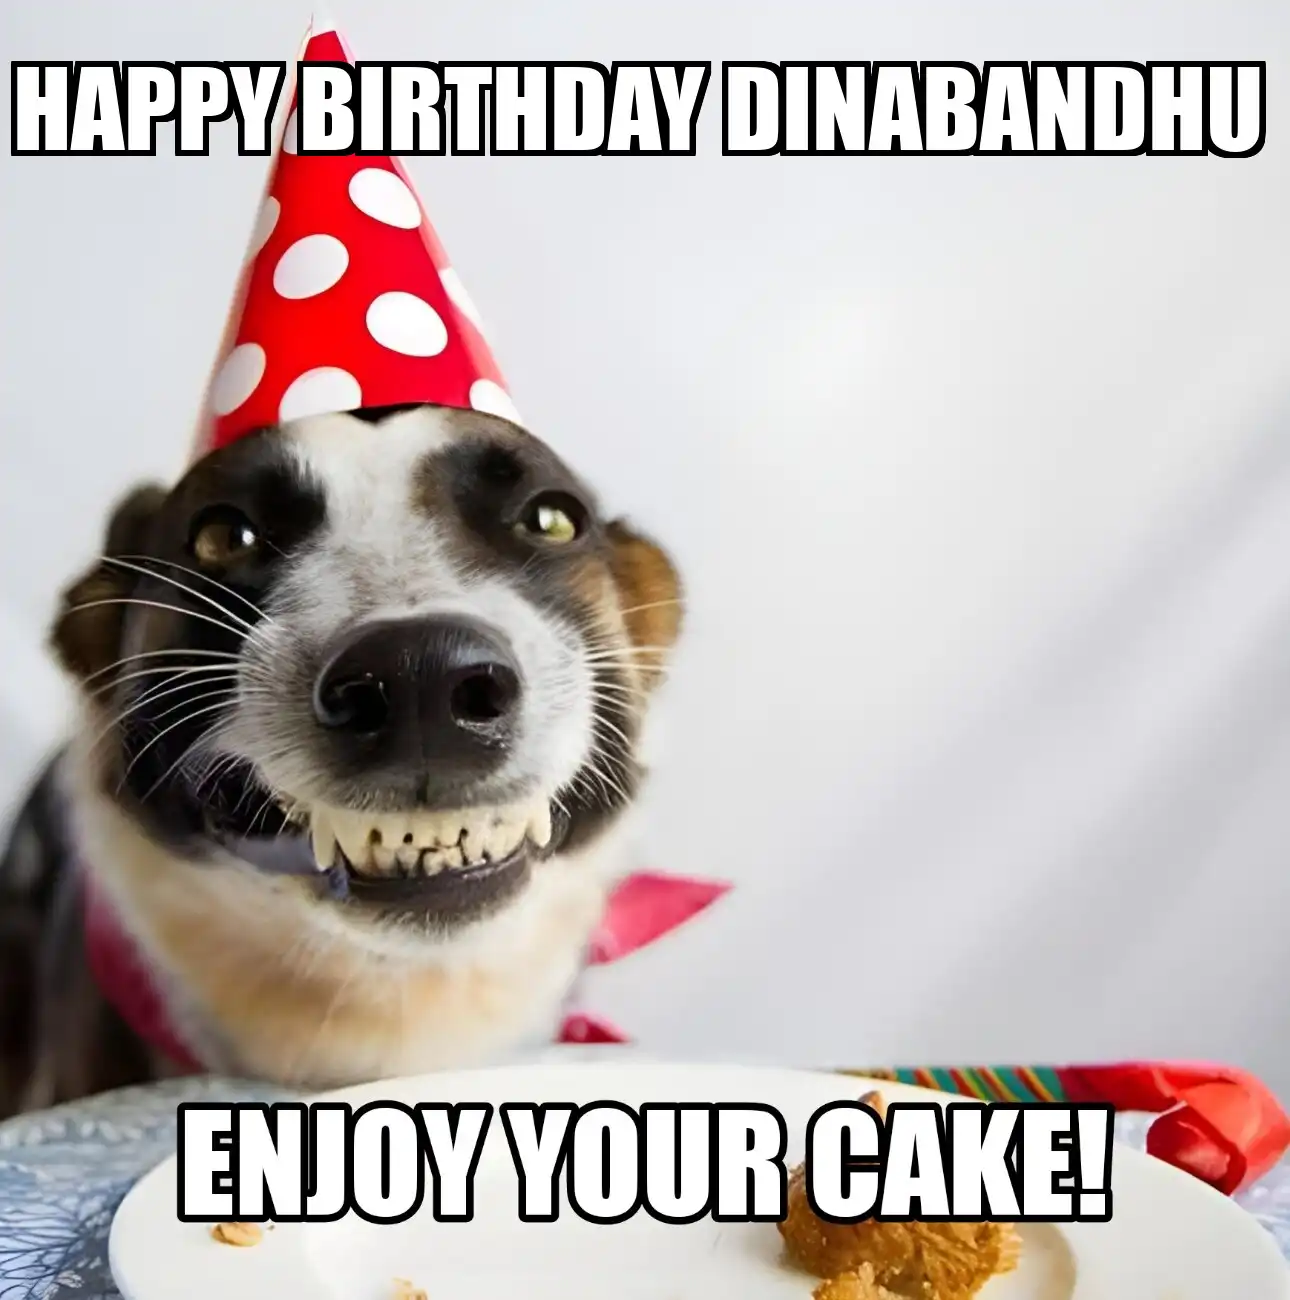 Happy Birthday Dinabandhu Enjoy Your Cake Dog Meme